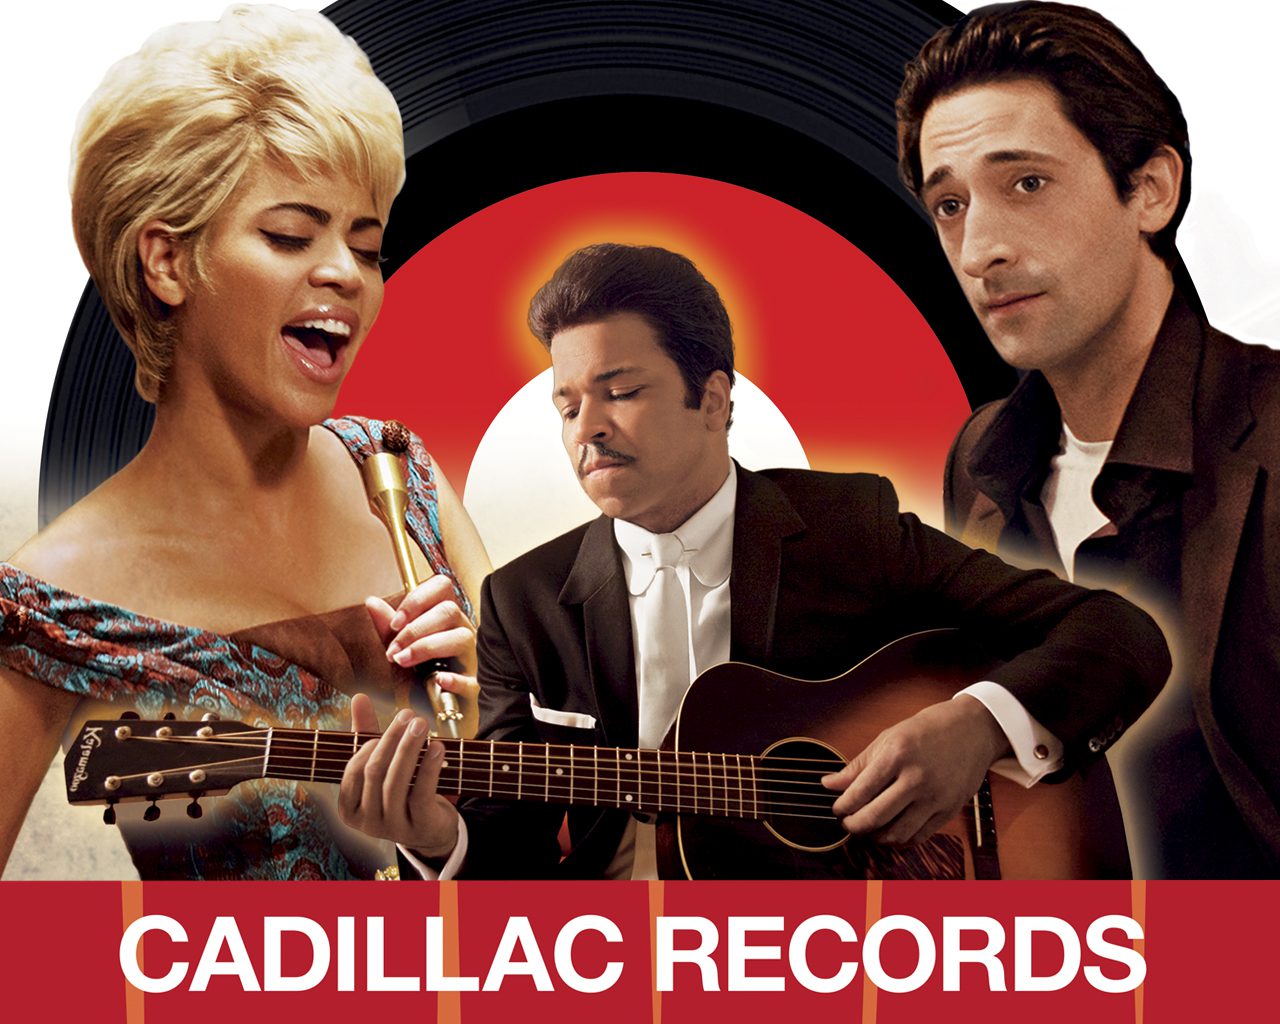 Cadillac Records- Full Movie